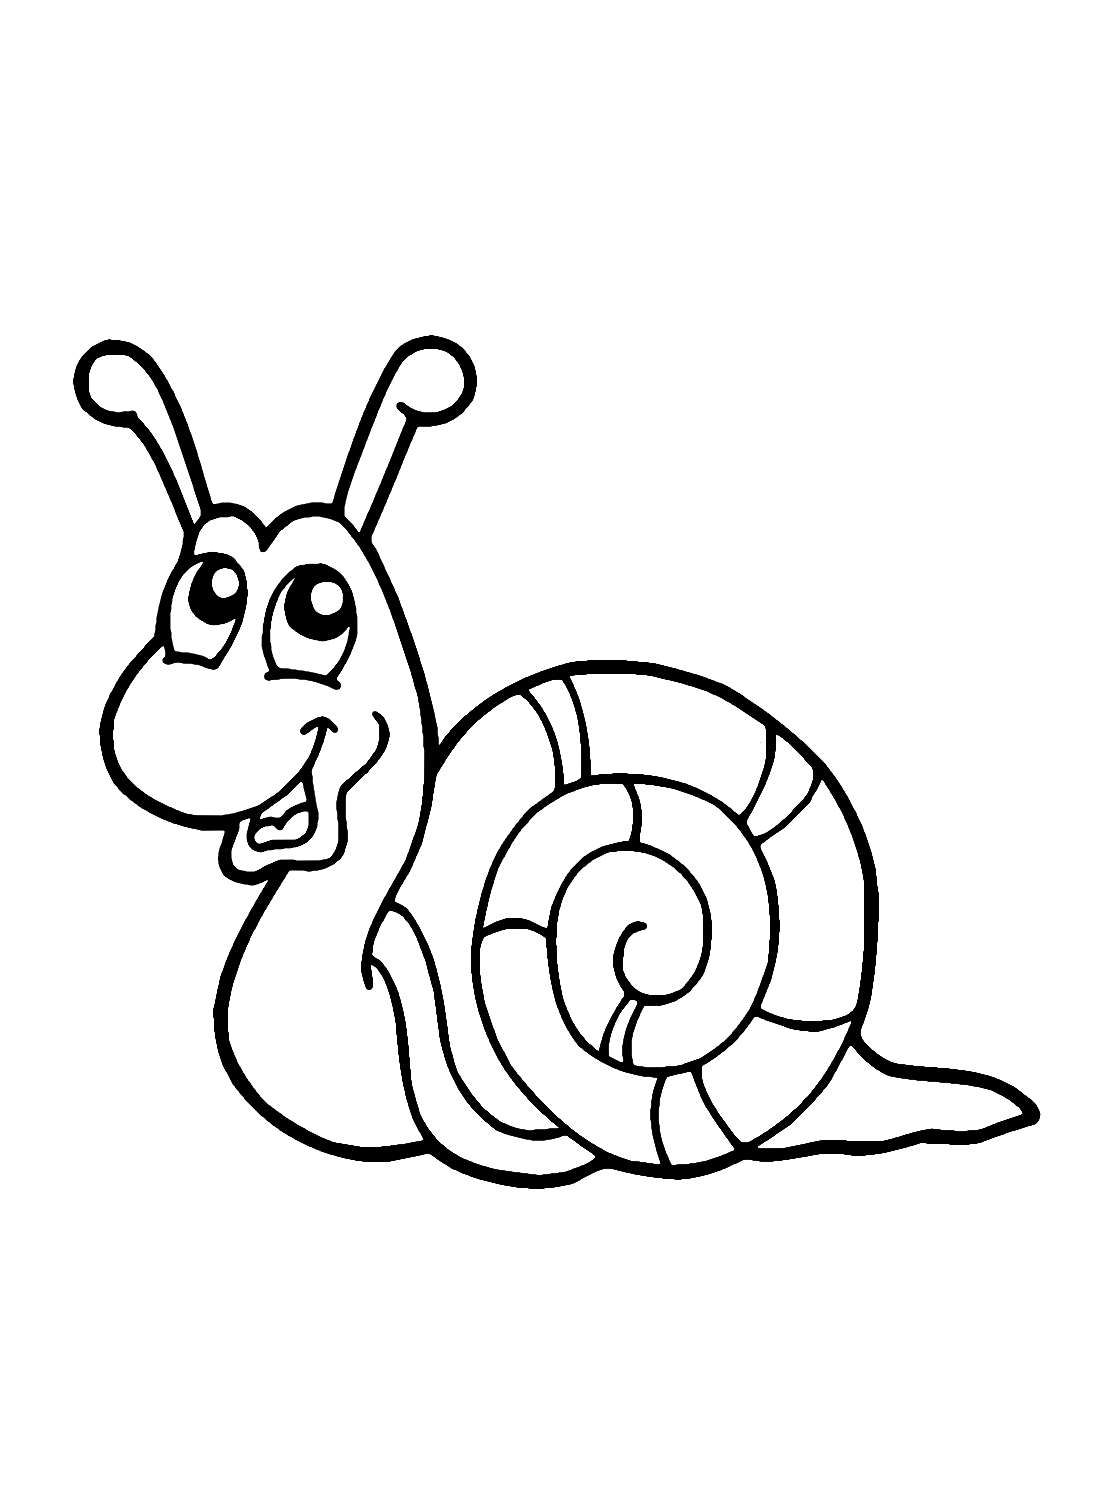 蜗牛可从蜗牛打印